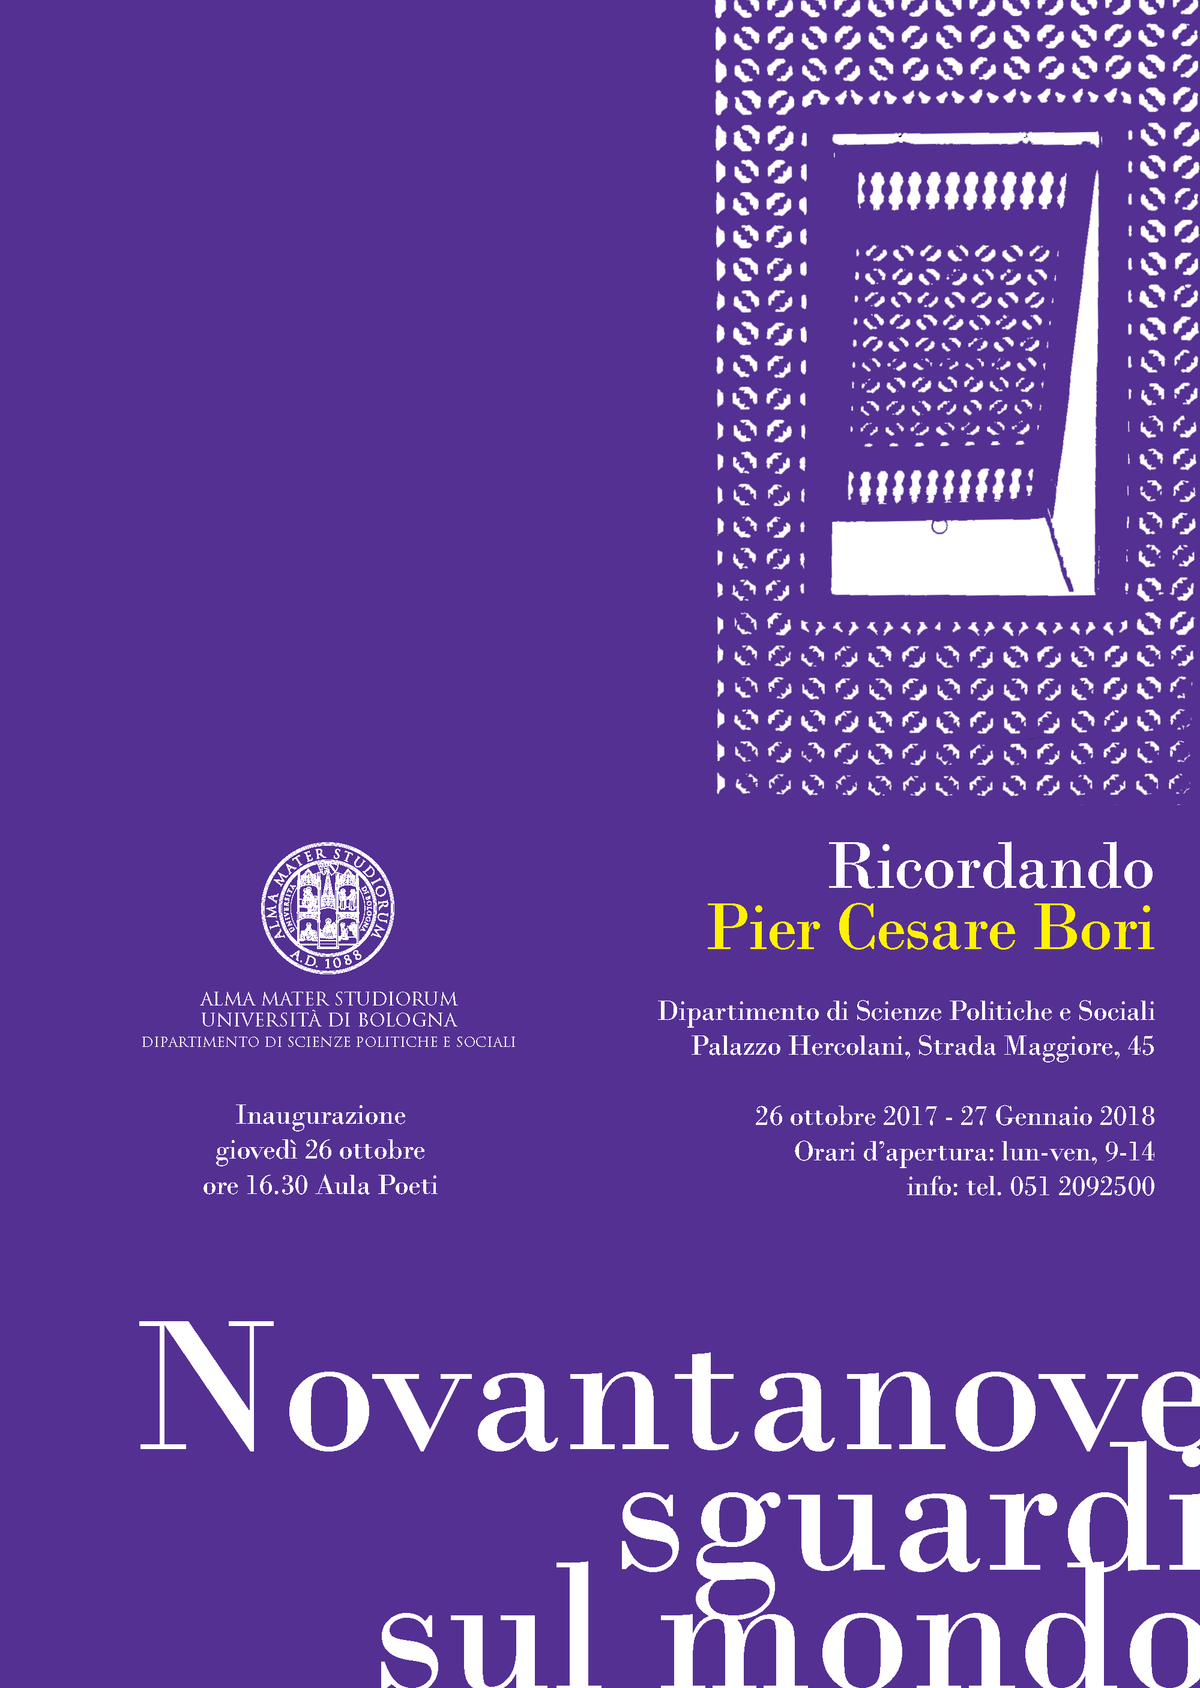 Una mostra a Bologna per ricordare Pier Cesare Bori: 99 sguardi sul mondo